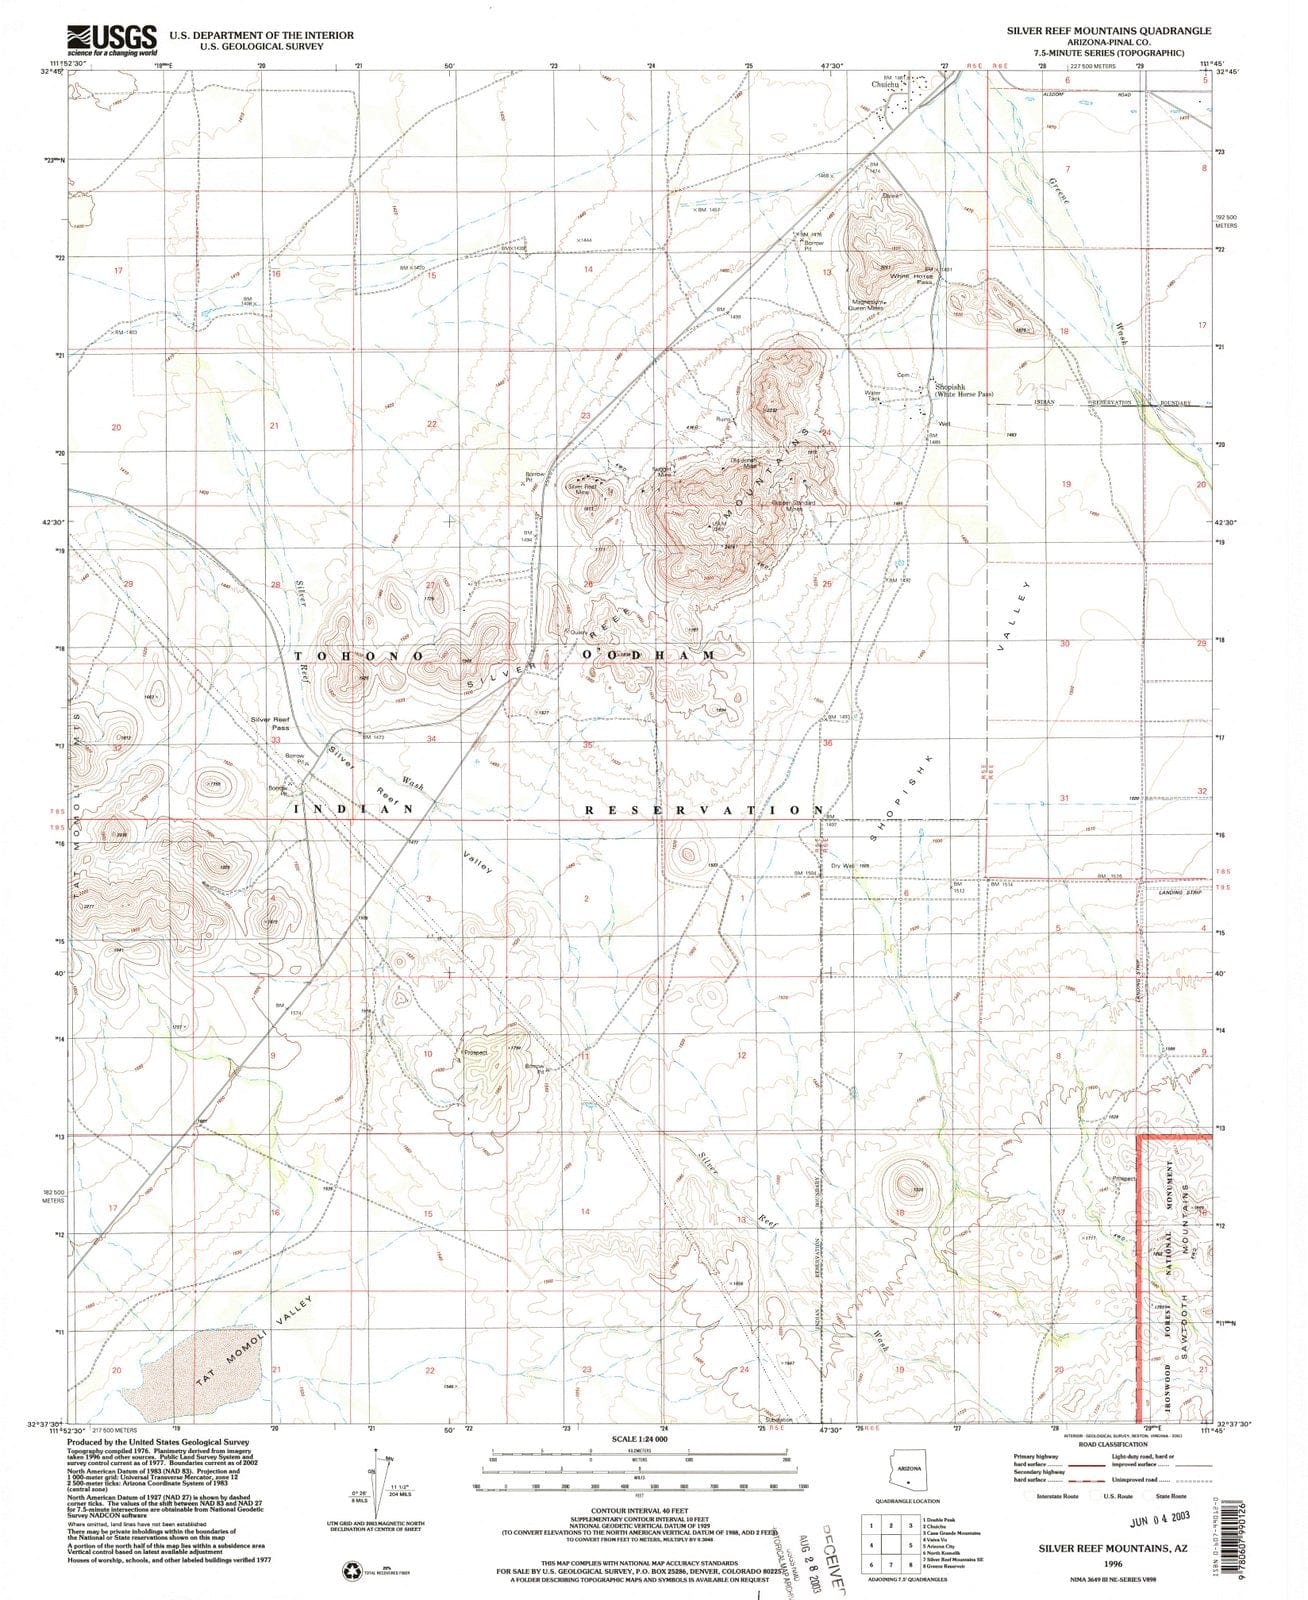 1996 Silver Reef Mountains, AZ - Arizona - USGS Topographic Map v2